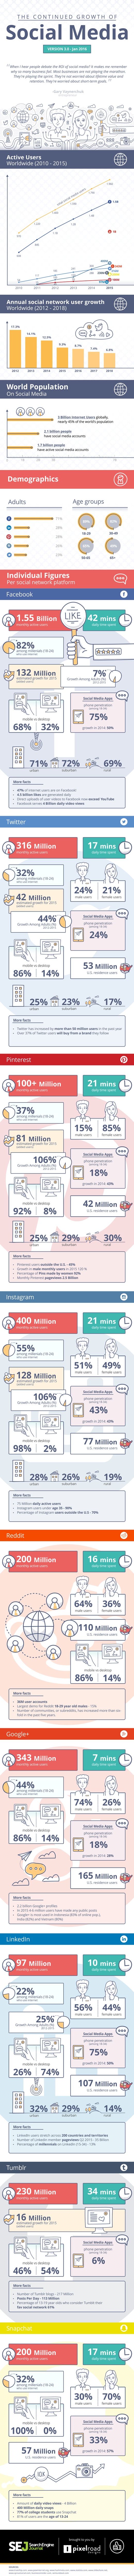 De groei van sociale media